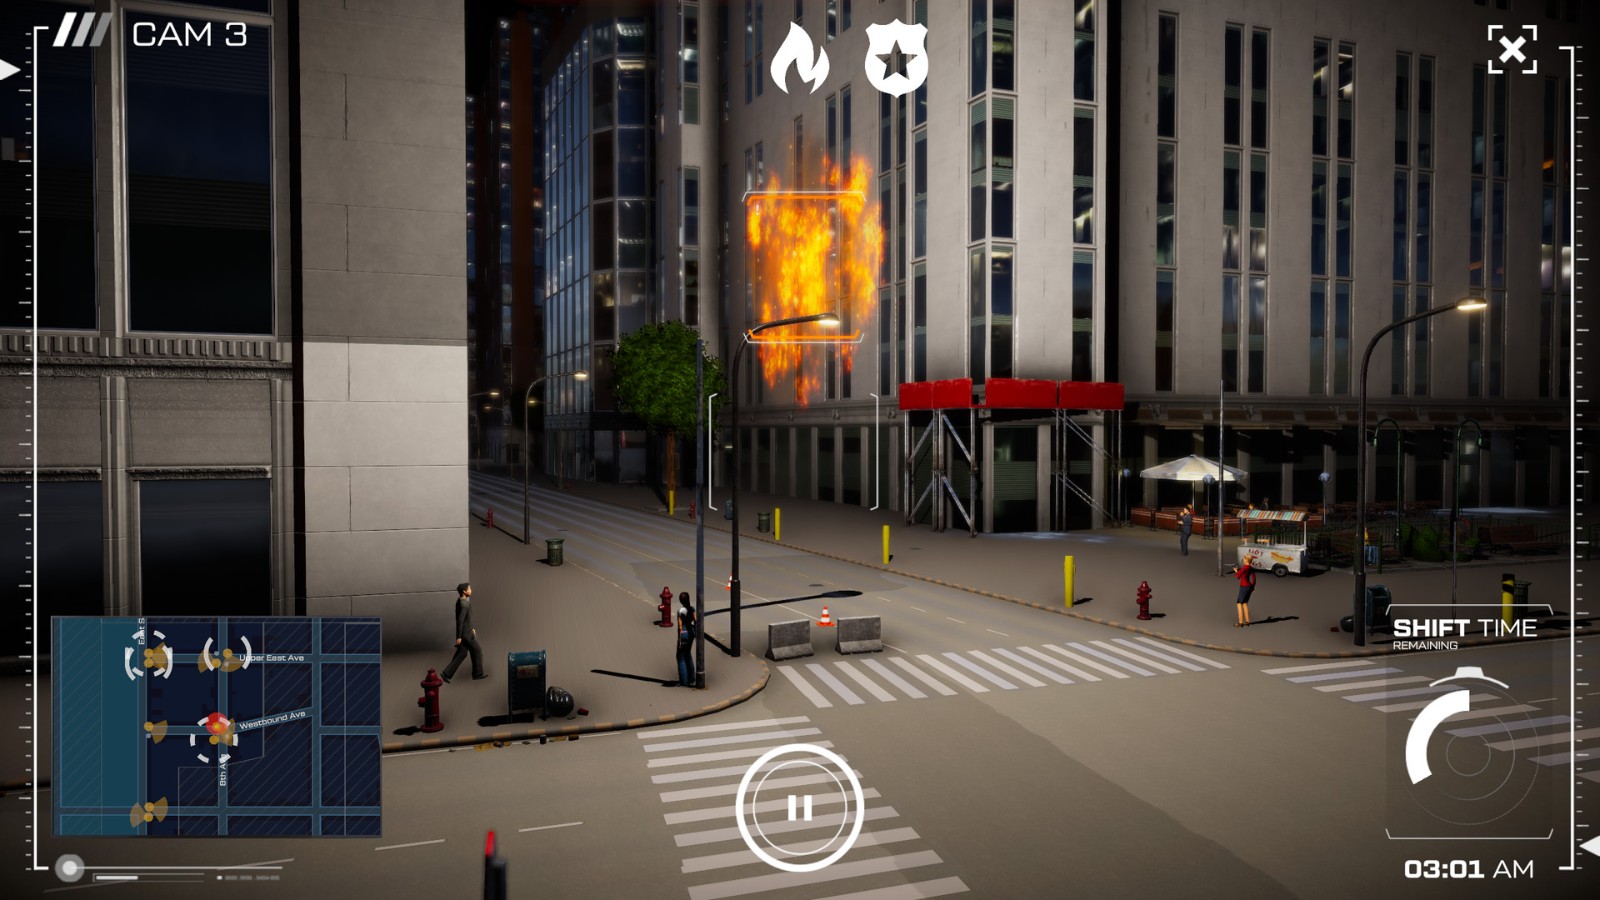 模拟游戏《城市之眼》即将发售 监控整个城市抓捕罪犯